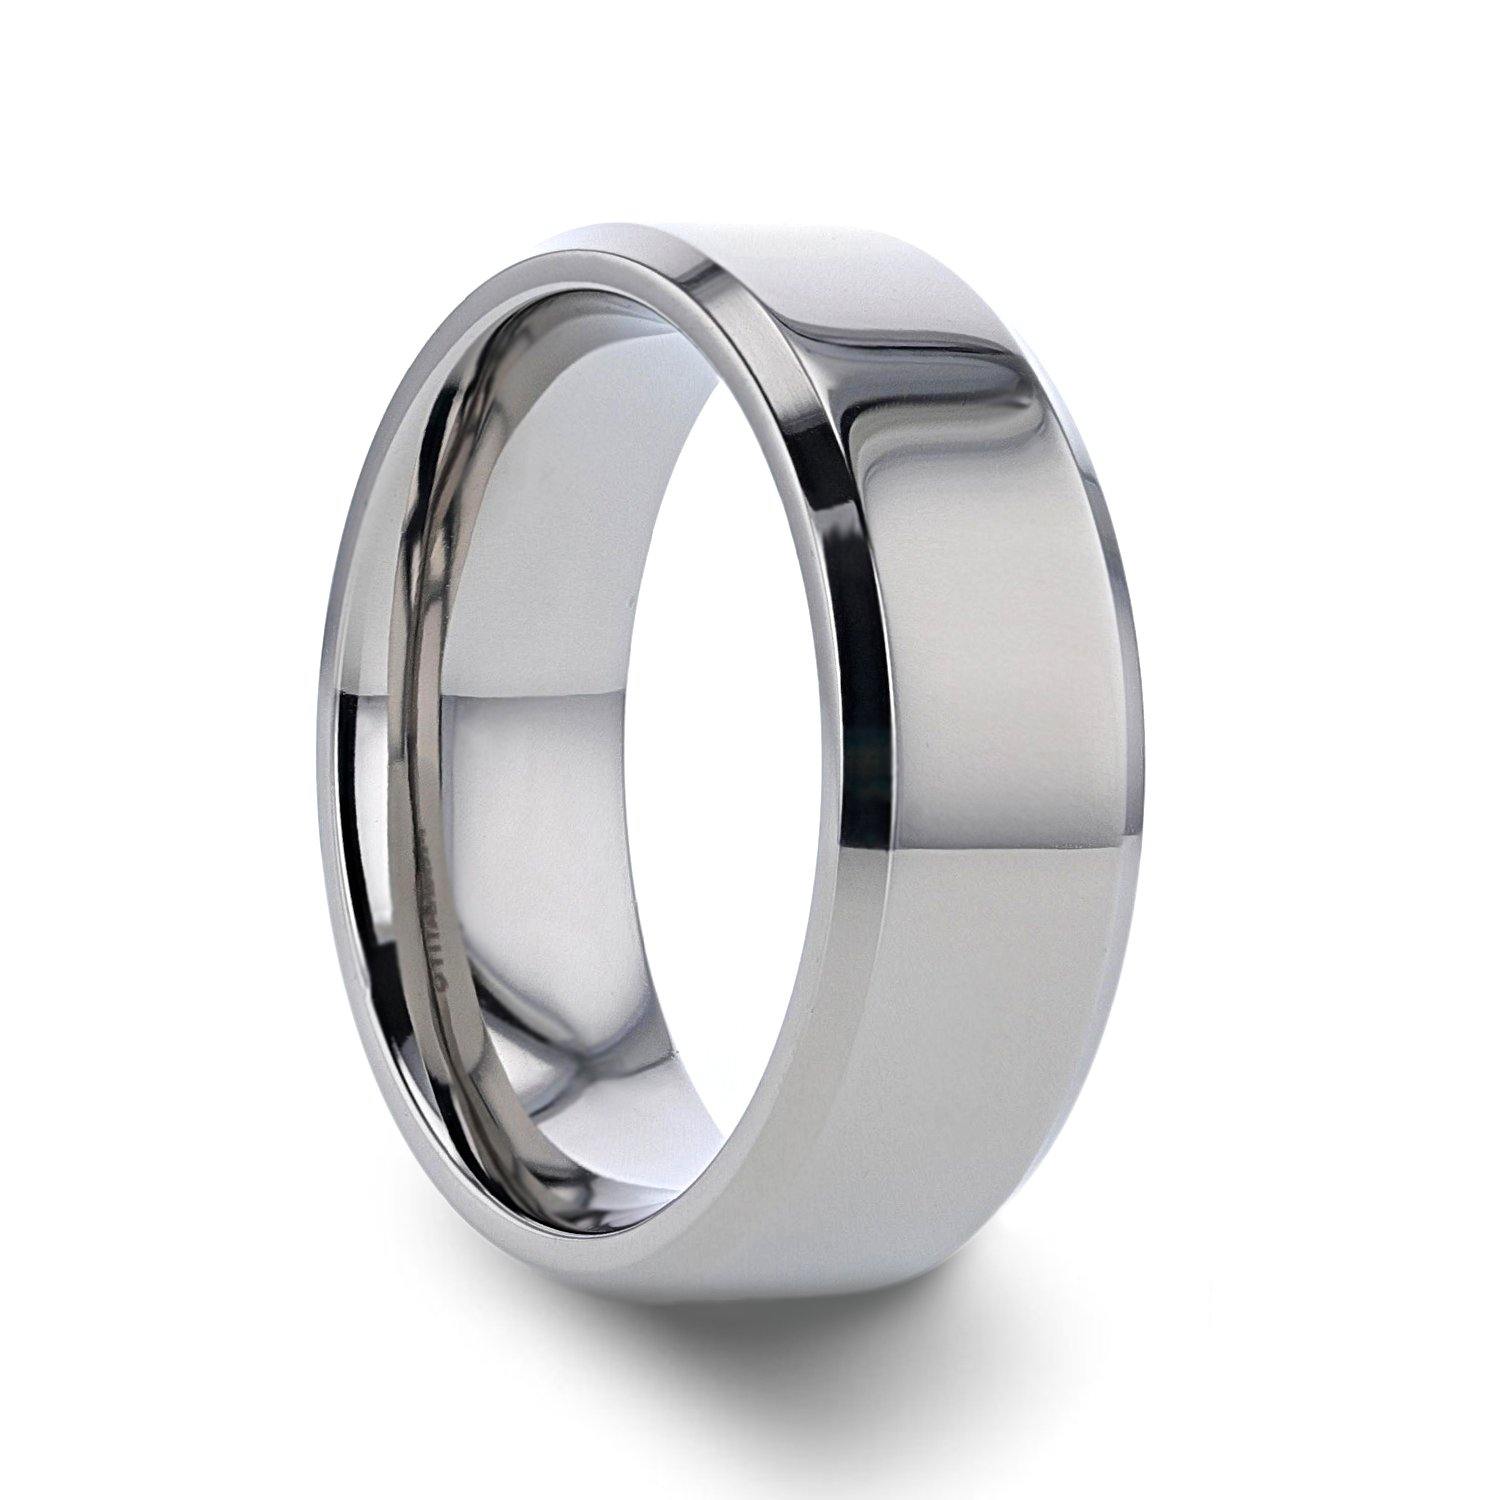 CORONAL - Men’s Polished Finish Beveled Edges Titanium Wedding Ring with Raised Center - 6mm & 8mm - The Rutile Ltd